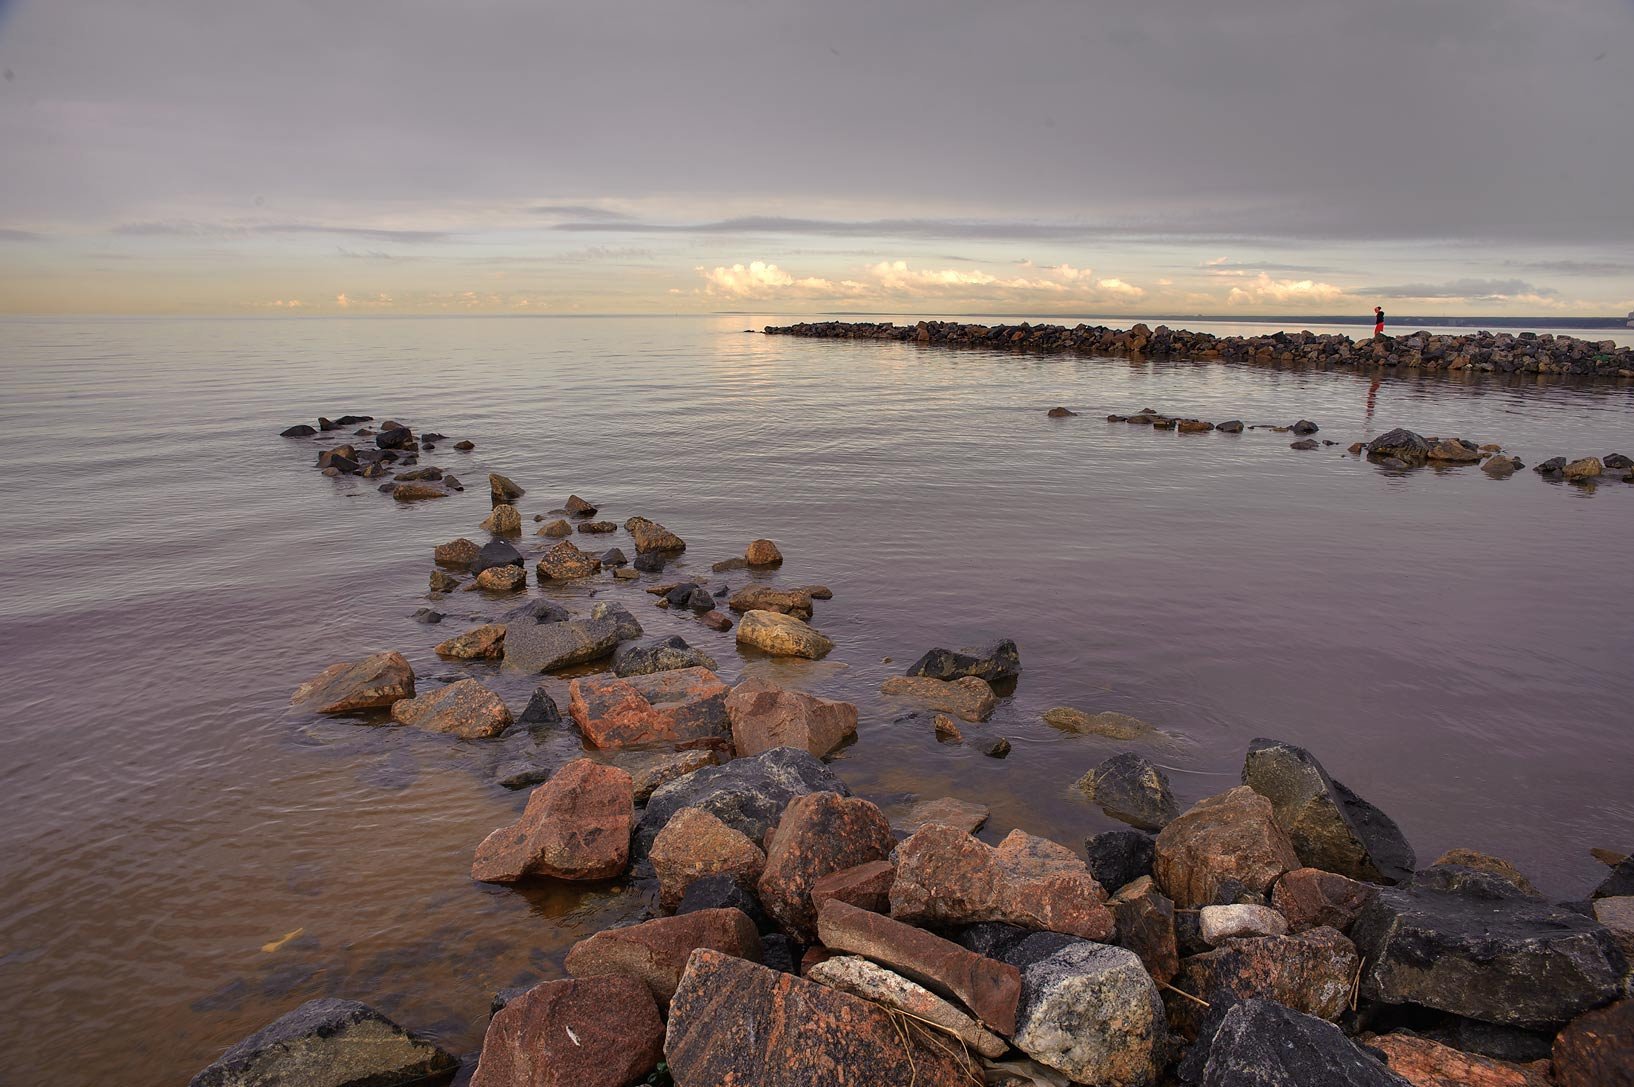 Каменный пляж финский залив Питер. Ботнический залив и финский залив. Финский залив Свеаборг. Финский залив 1856. Финский залив соленая вода